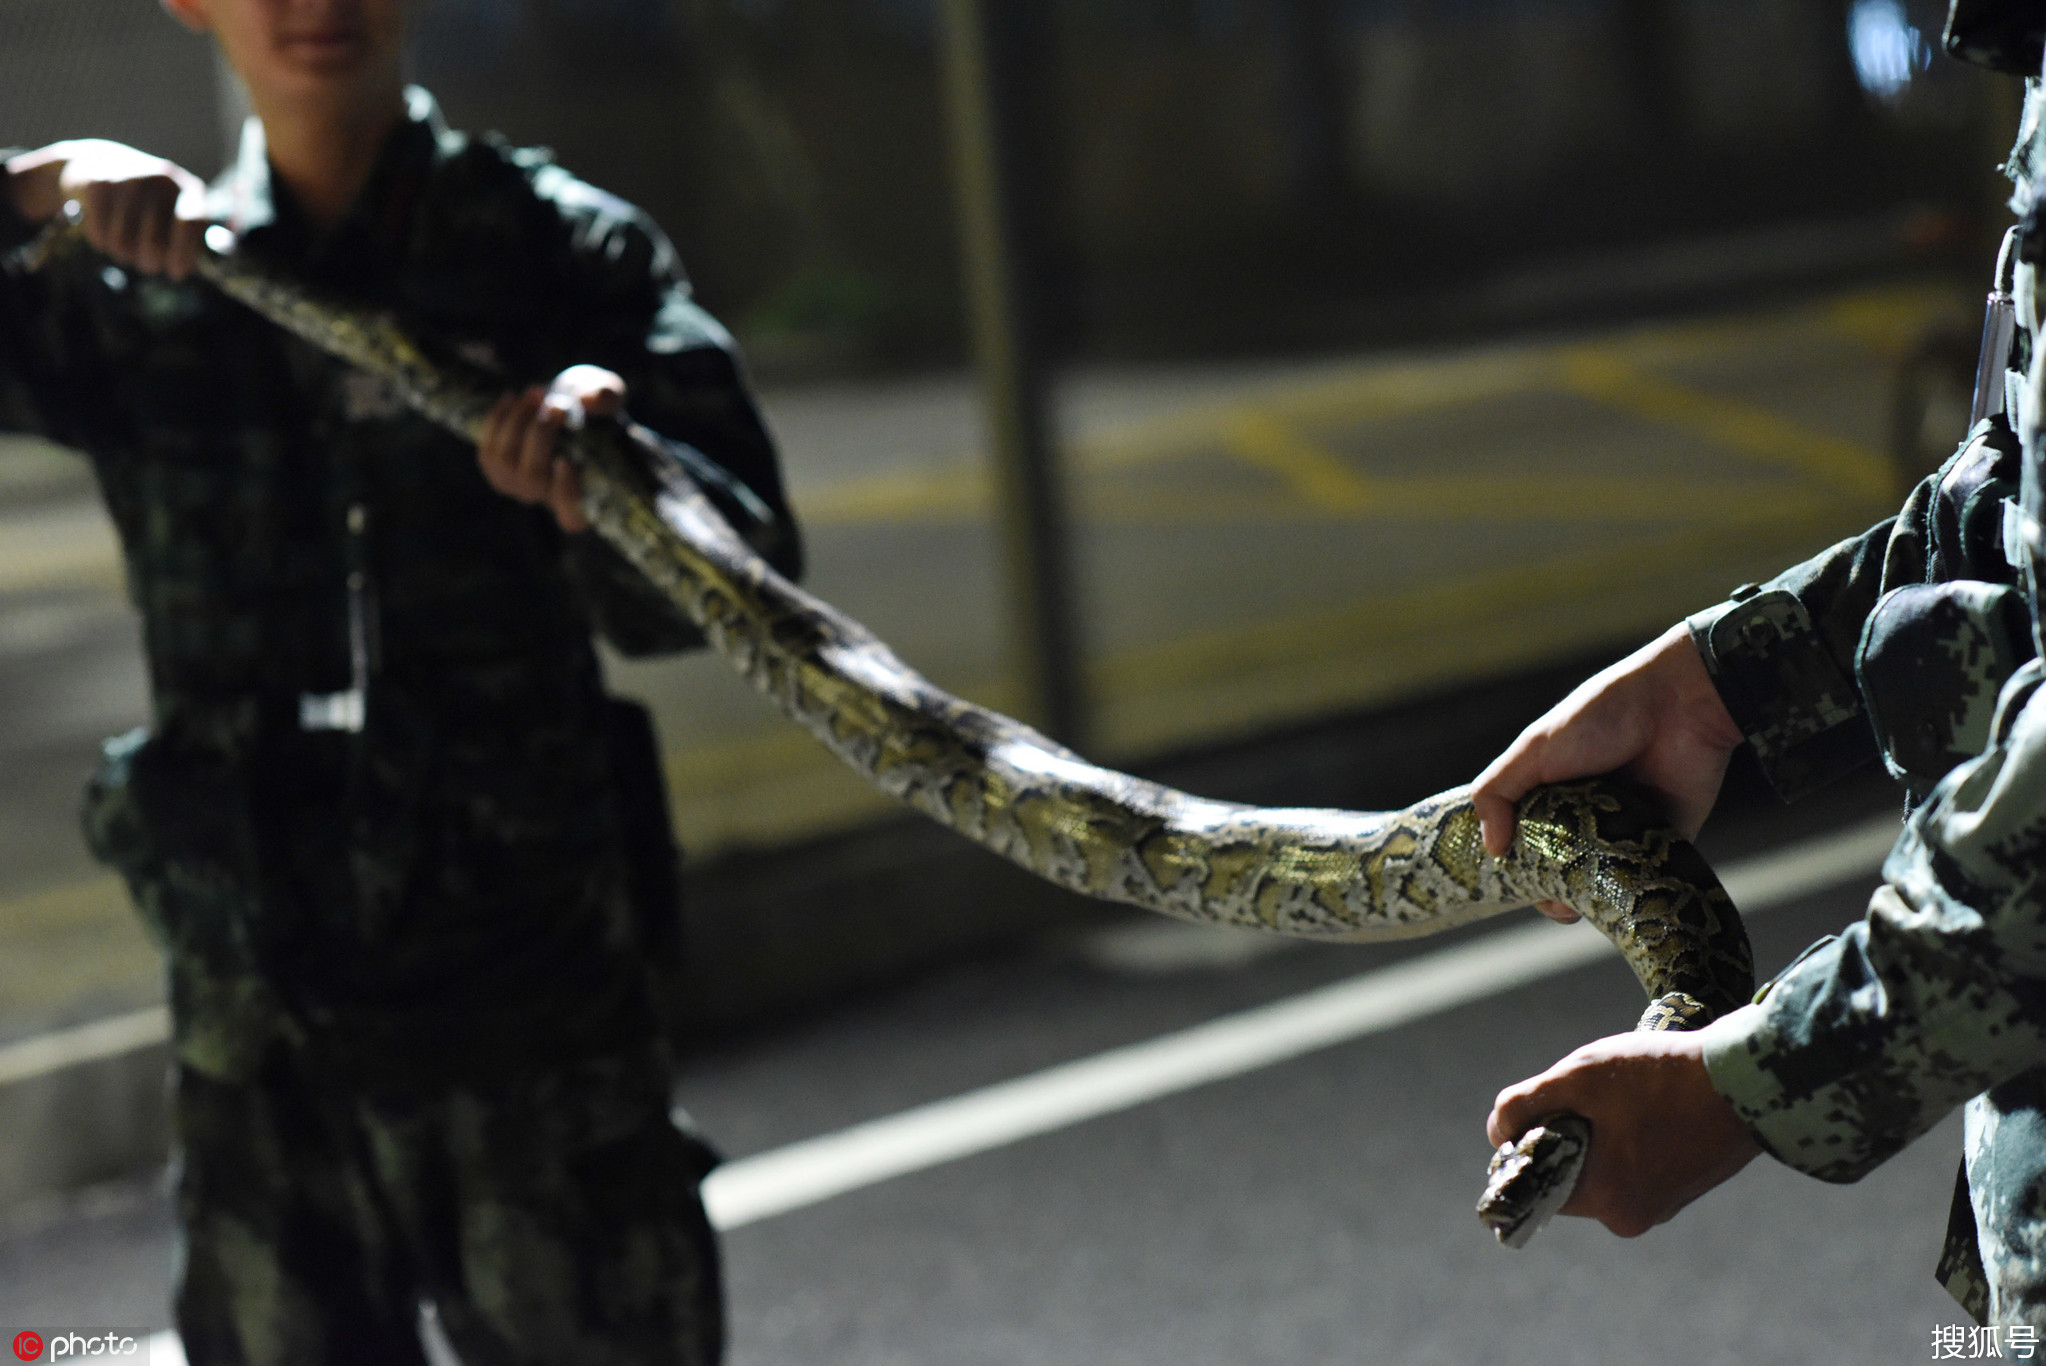 蛇也偷渡！2米蟒蛇穿铁网爬向深圳被武警‘遣返’-搜狐大视野-搜狐新闻